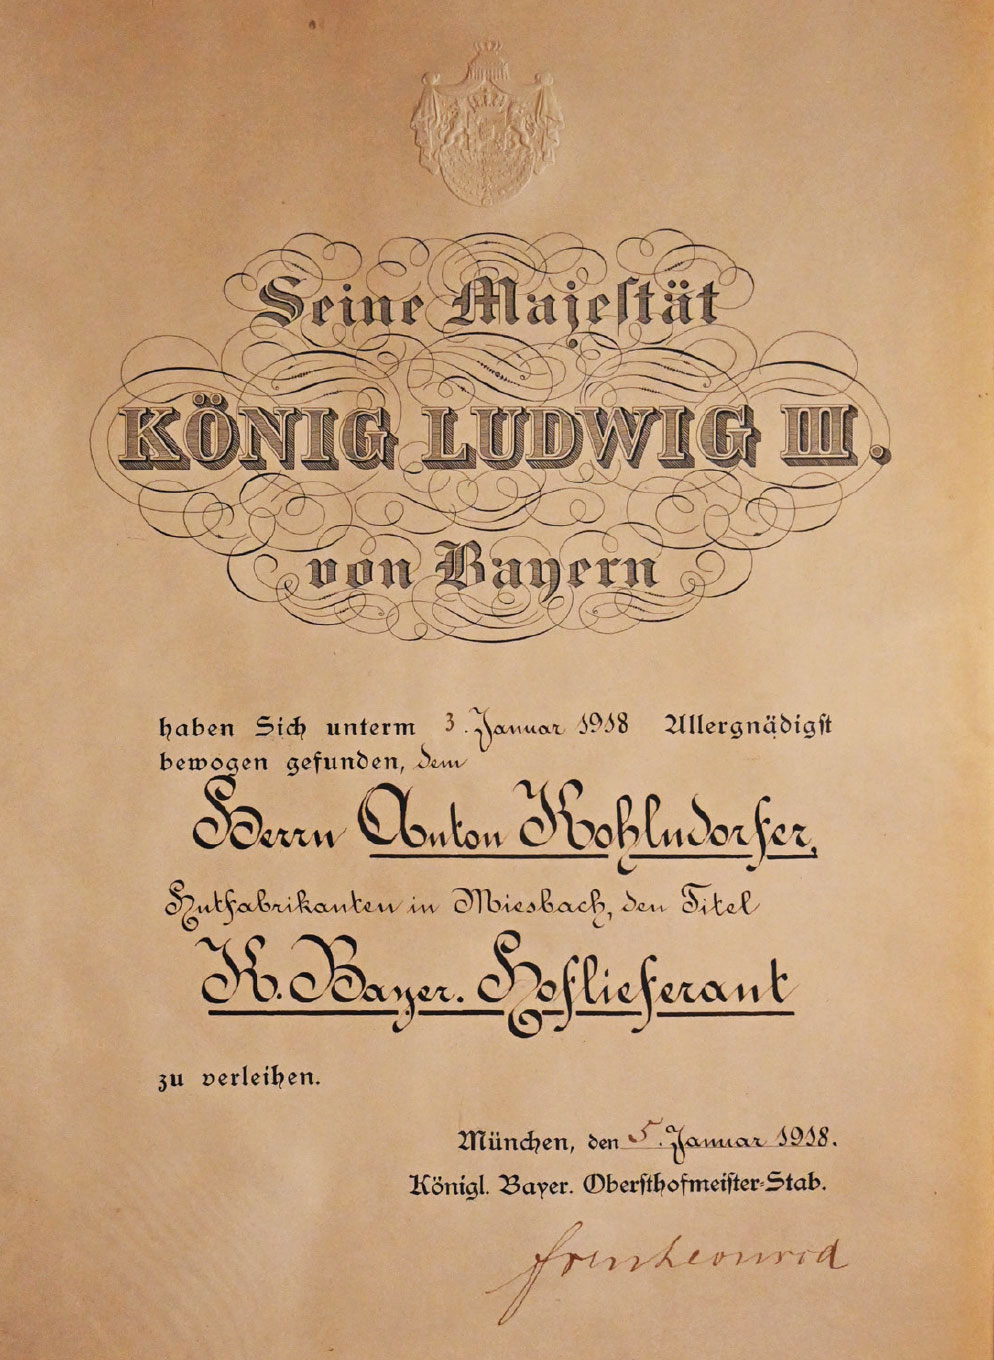 Urkunde zur Ernennung zum Hoflieferanten, 1918